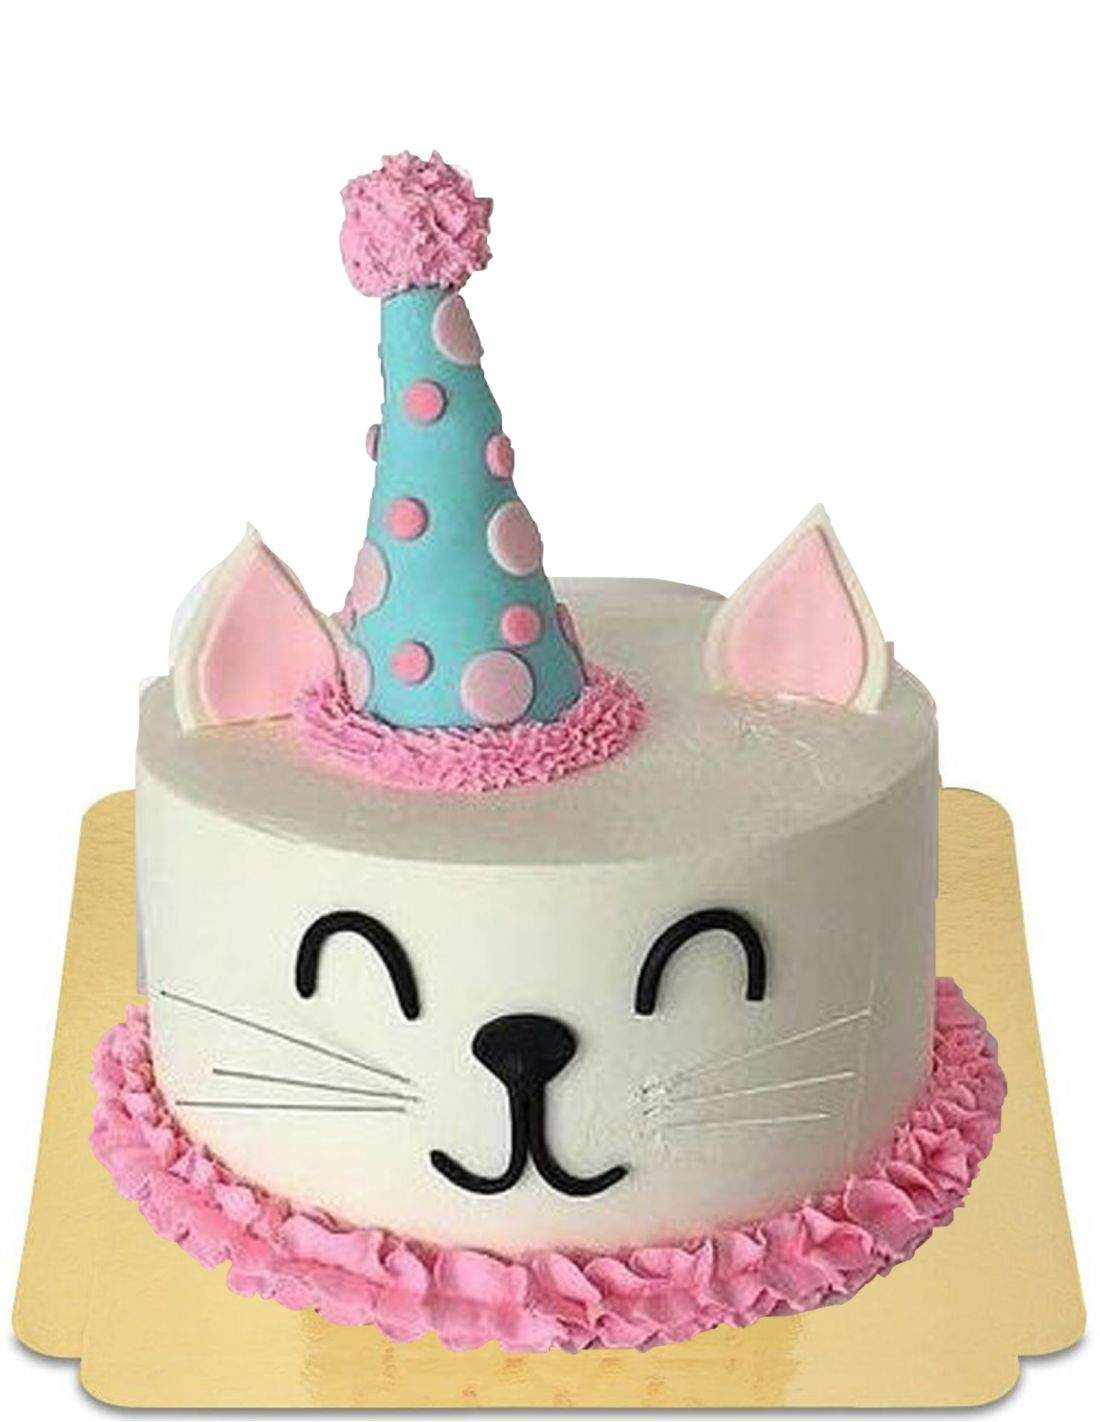 Comment faire la décoration d'un gâteau ? – Langue Au chat